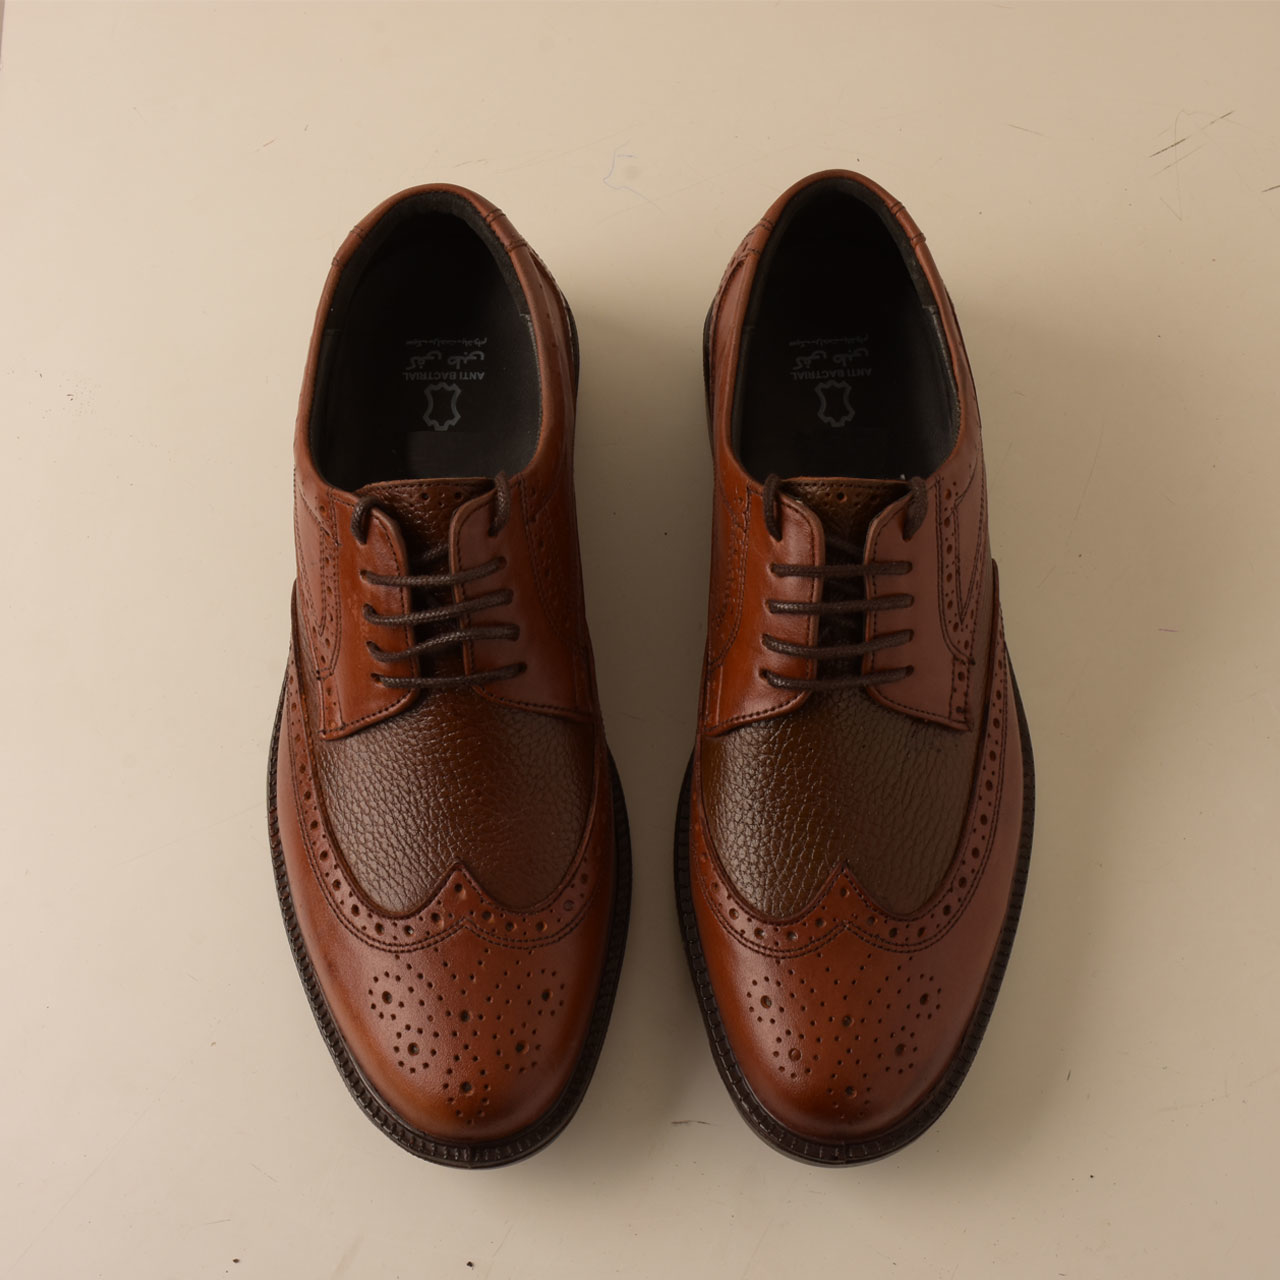 PARINECHARM leather men's shoes , SHO177-1 Model 